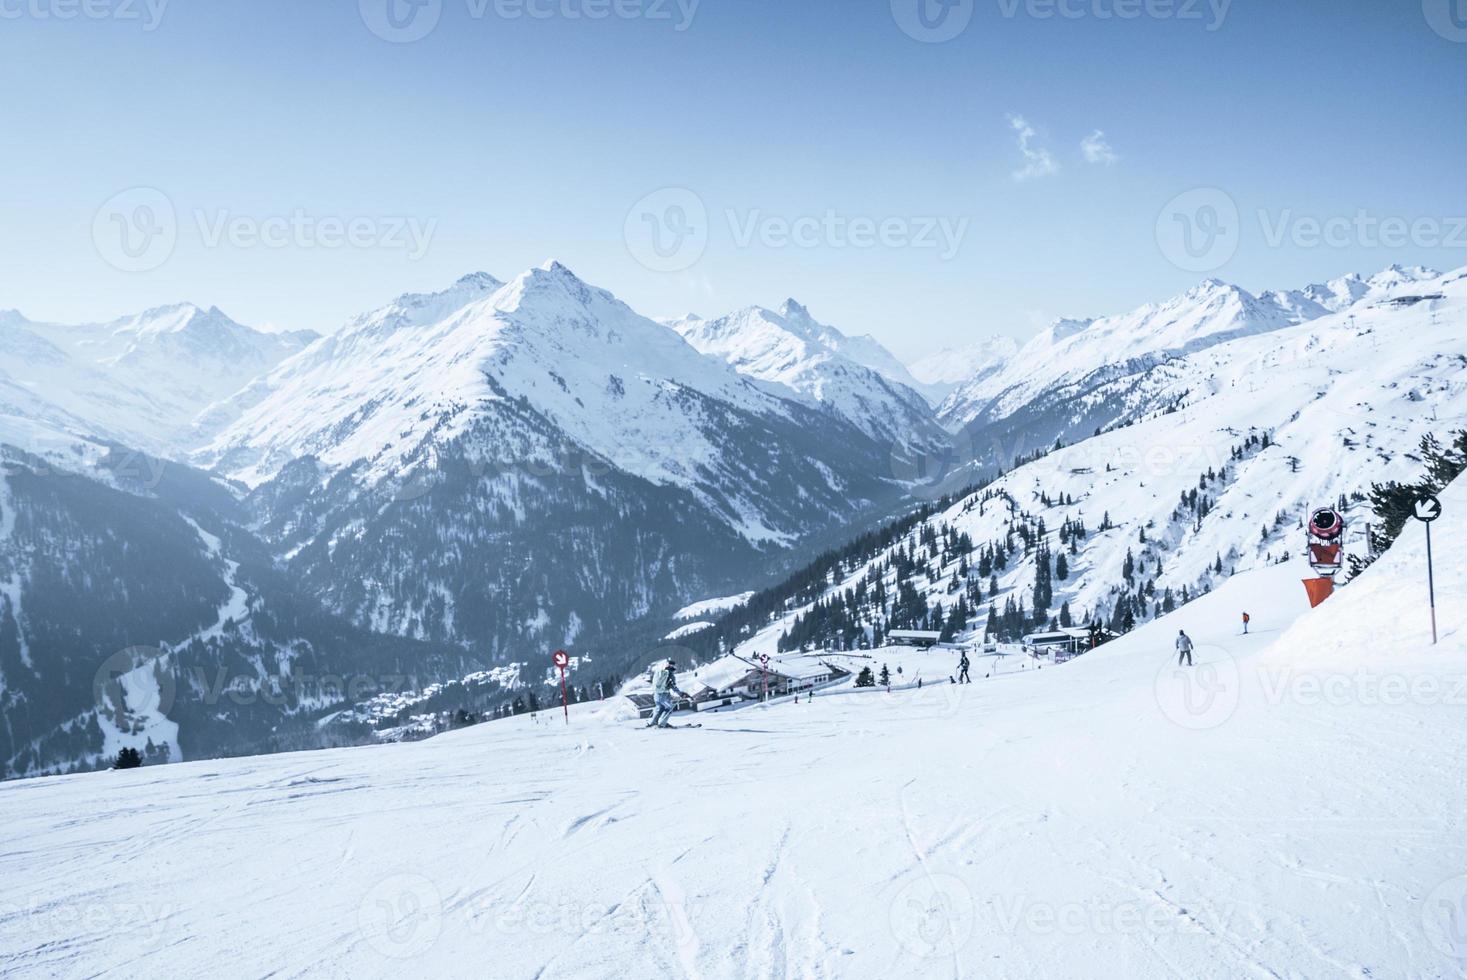 skieurs ski sur pente de montagne couverte de neige contre le ciel bleu photo